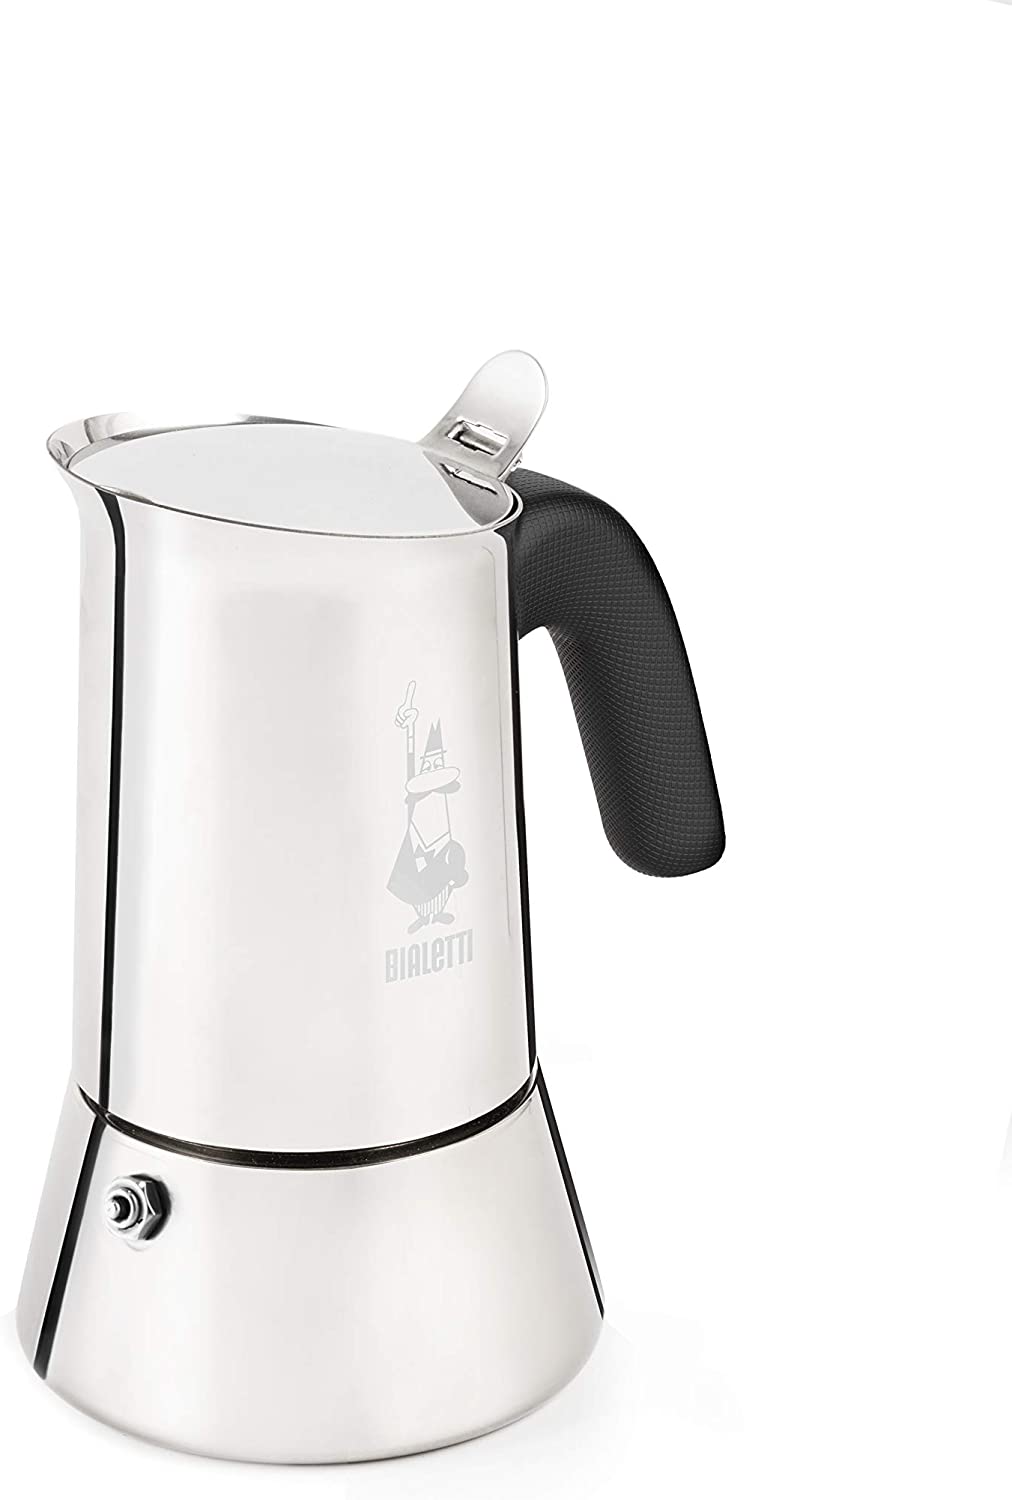 Skænk Marine sandsynligt Bialetti Venus 10 Cup Stainless Steel Stove Top Coffee Maker - Induction